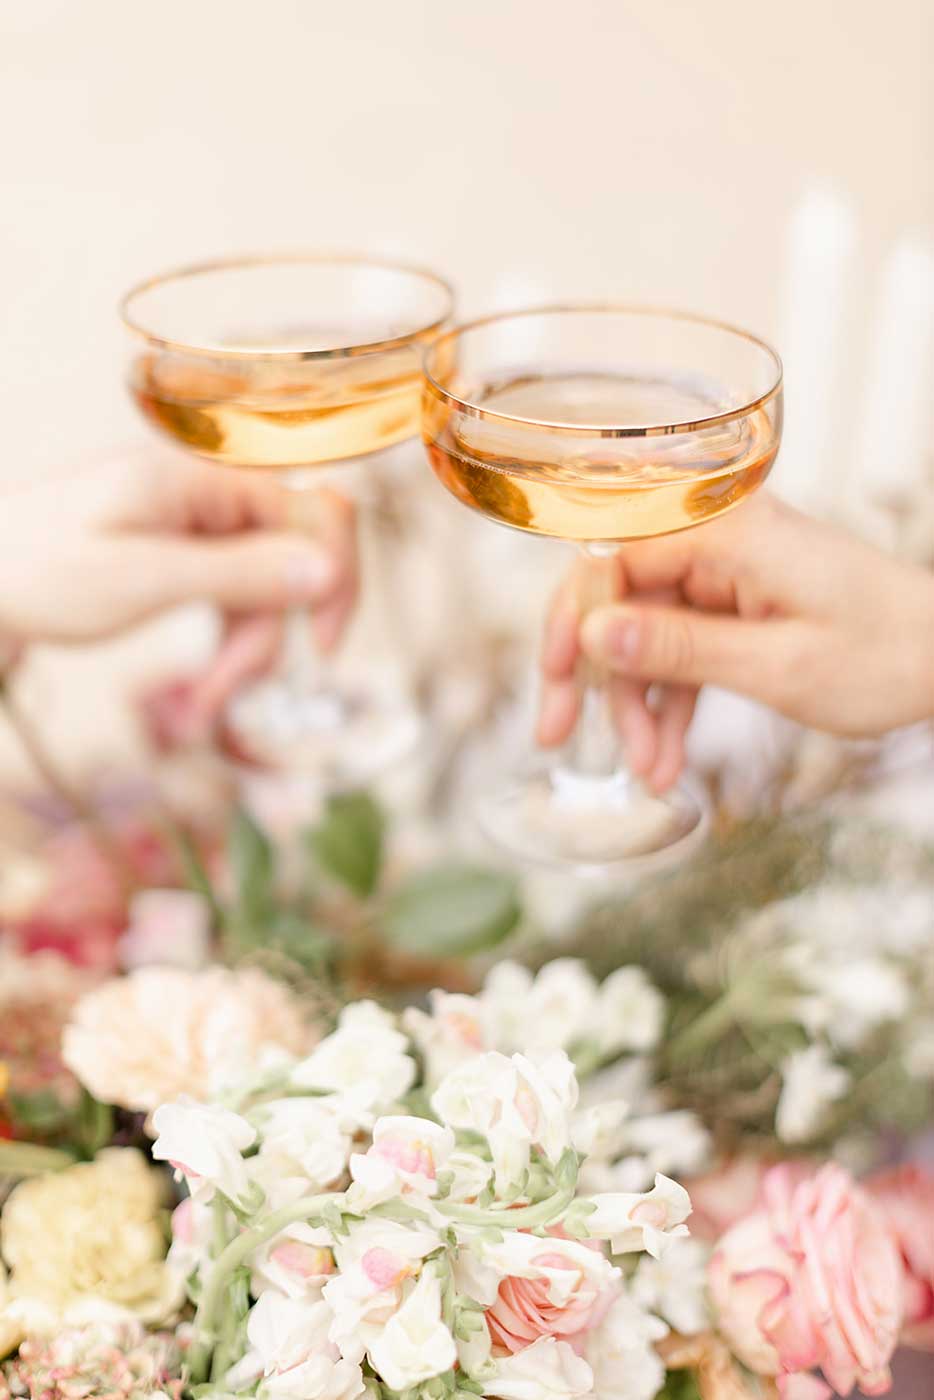 Fine Art Hochzeitsfotografie, Styled Shooting Hochzeitsblumen Blumenstrauß mit anstoßeneden Champagnerschalen Sektgläser